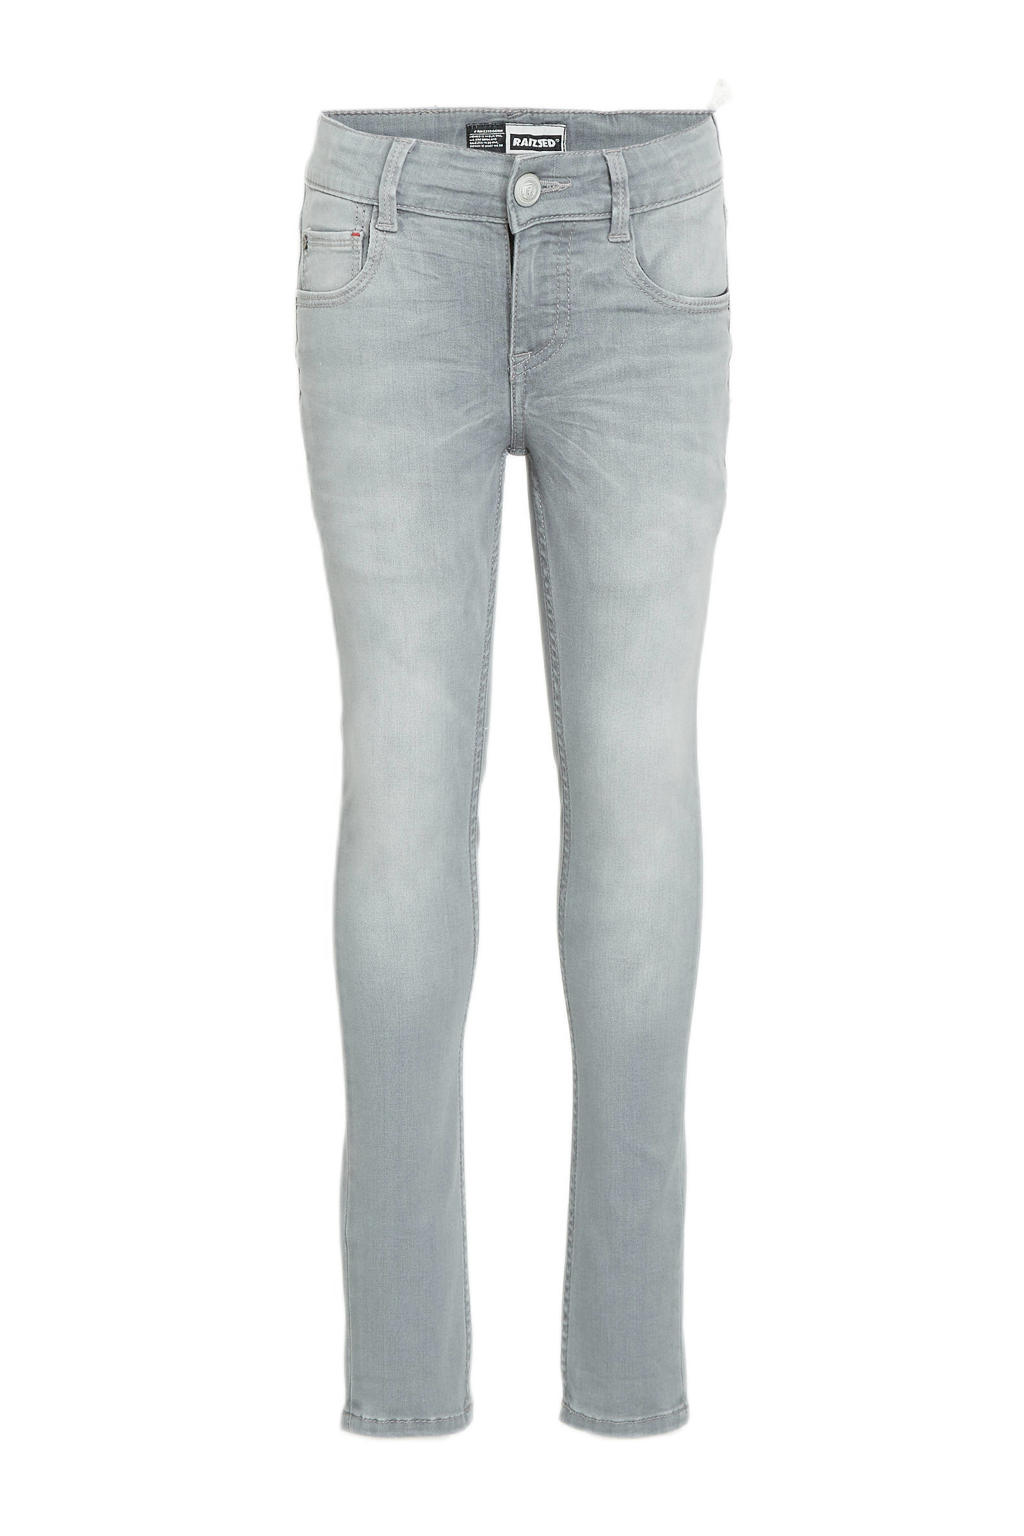 Raizzed skinny jeans Tokyo light grey stoned